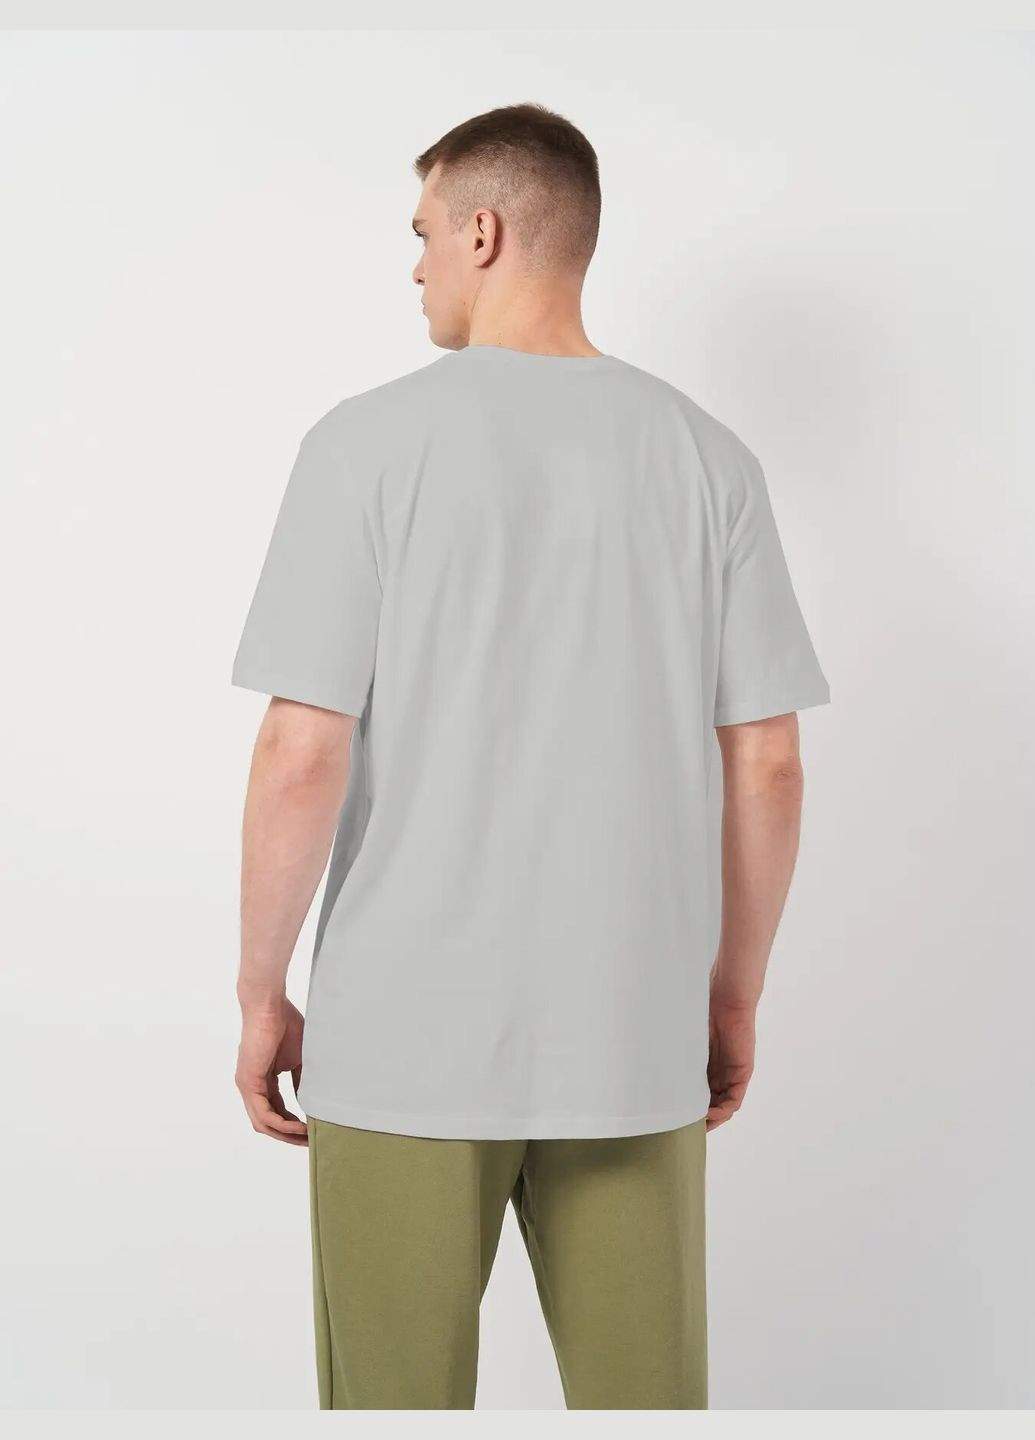 Светло-серая футболка мужская больших размеров с коротким рукавом Роза